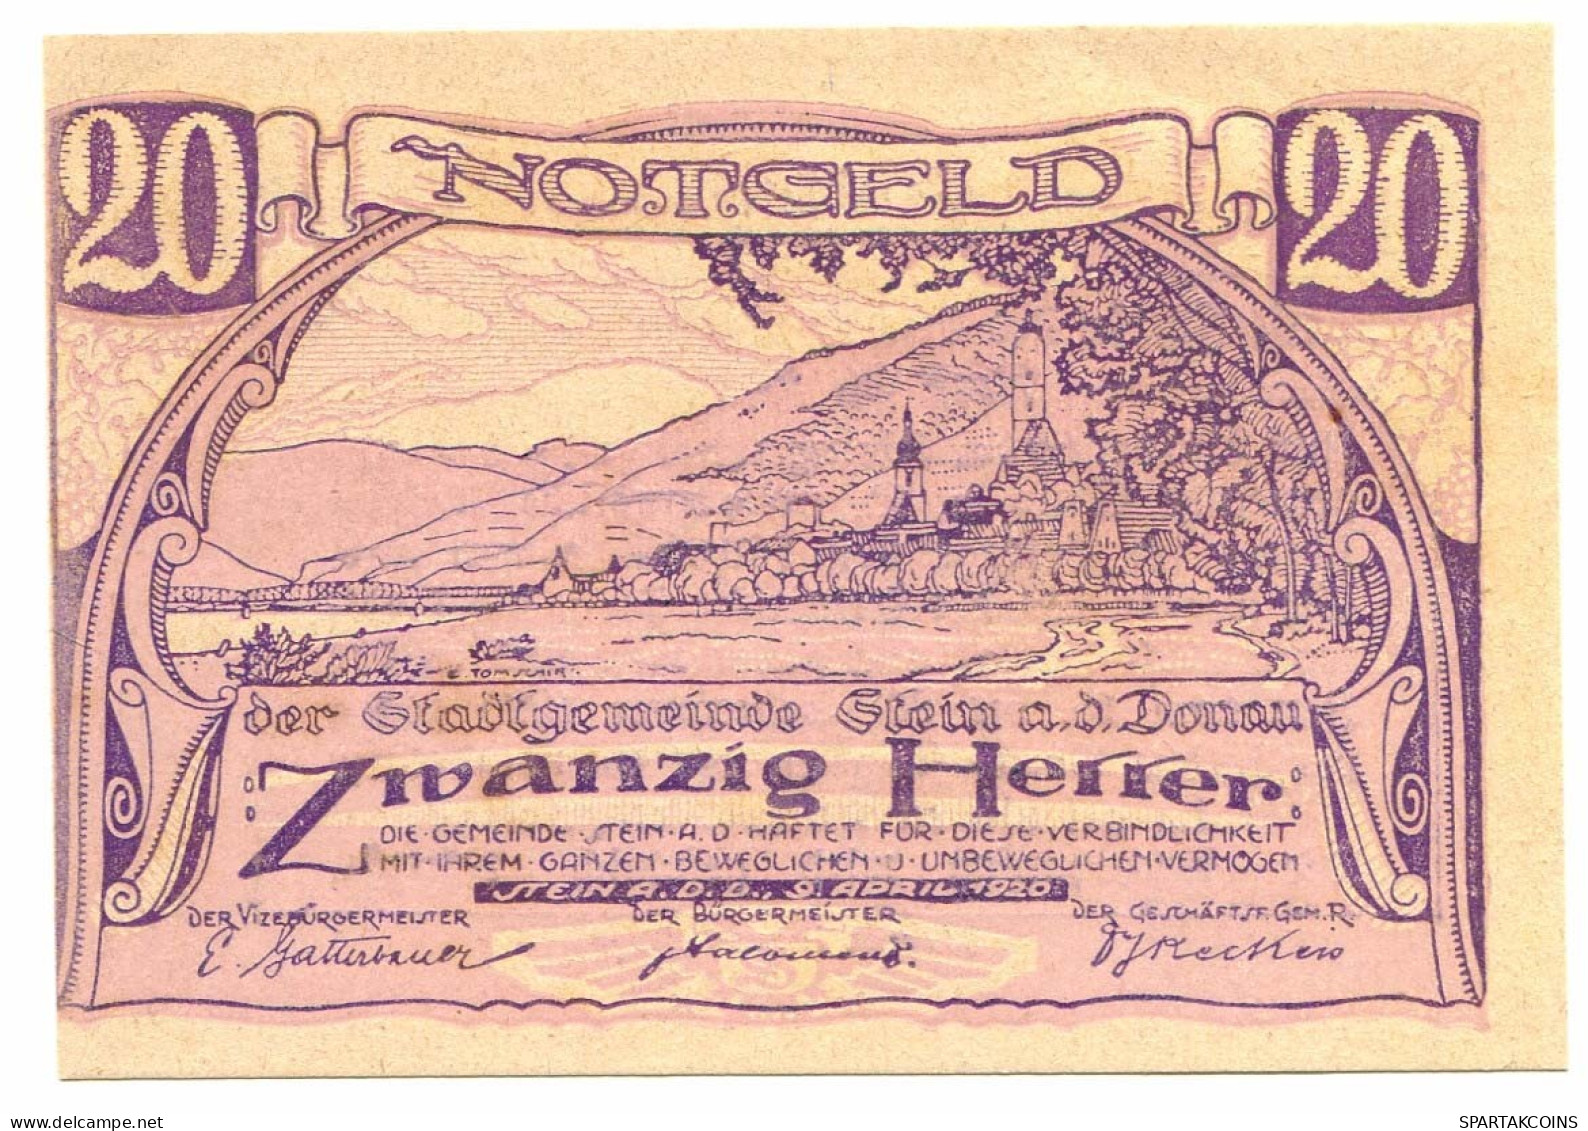 20 Heller 1920 STEIN Österreich UNC Notgeld Papiergeld Banknote #P10329 - Lokale Ausgaben